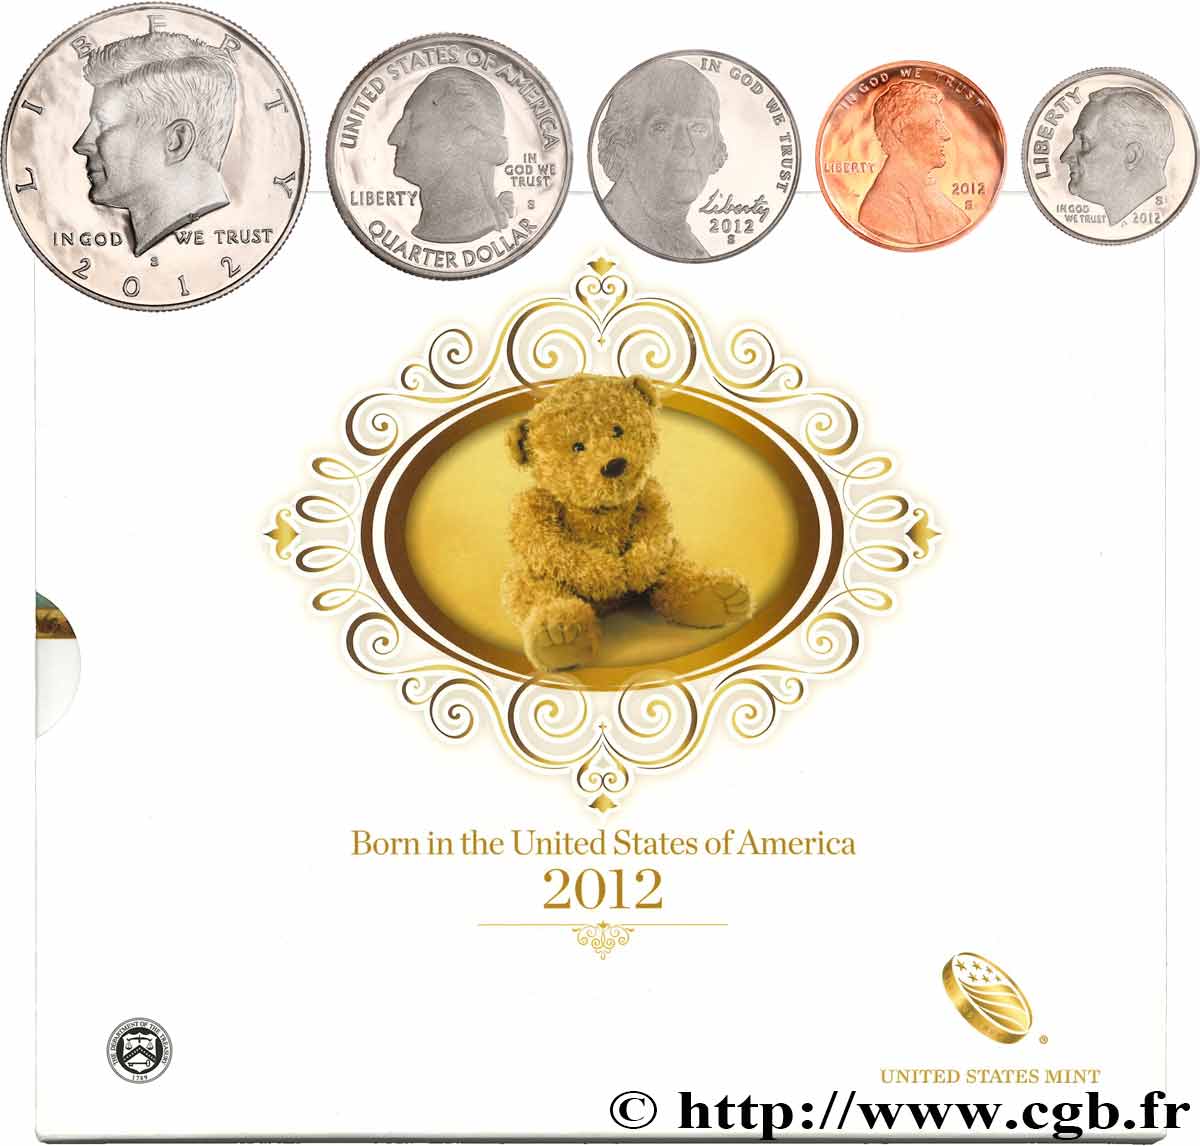 ESTADOS UNIDOS DE AMÉRICA BORN IN THE USA COIN SET - PROOF - 5 monnaies 2012 S- San Francisco FDC 